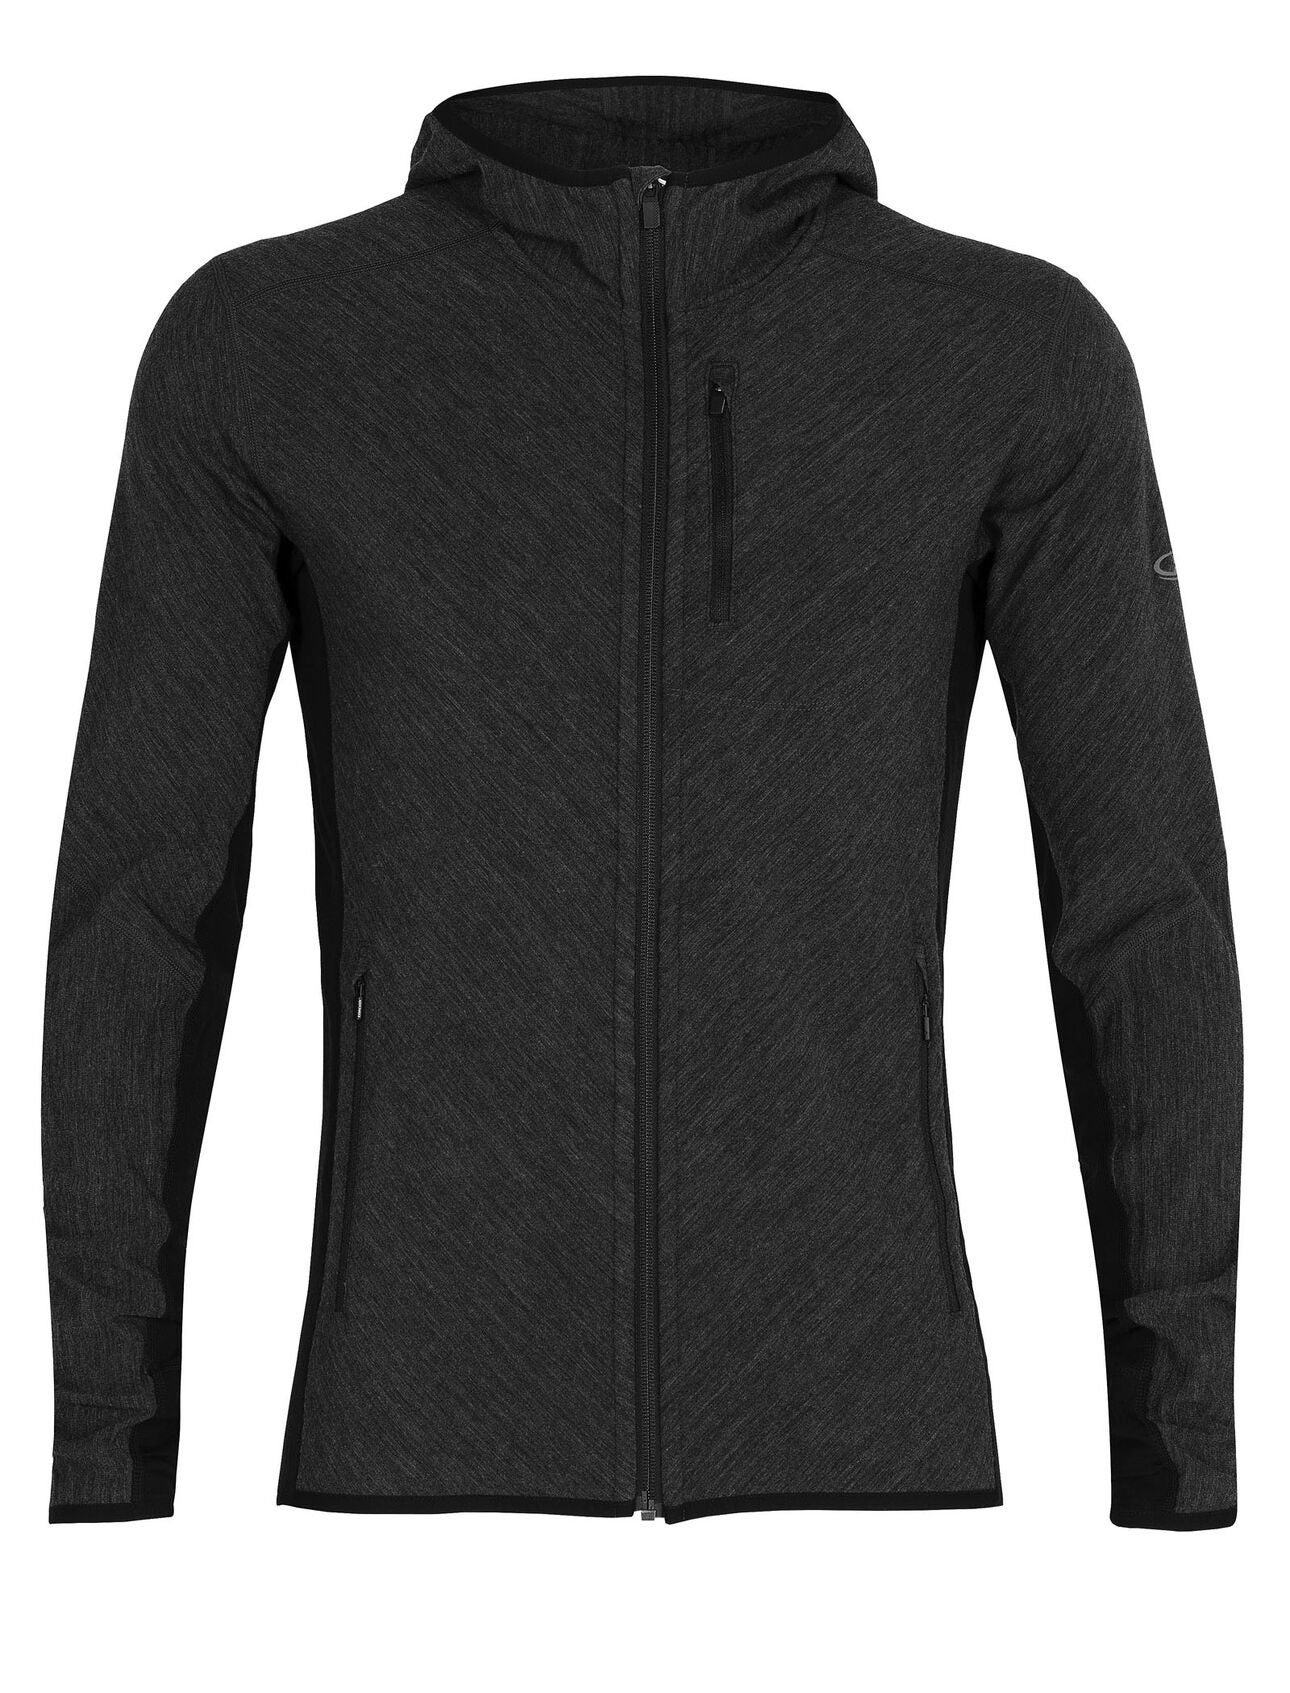 Icebreaker.com] Men's RealFleece™ Merino Descender Long Sleeve Zip Hood  Jacket $125 (50% off) - 10% more! - RedFlagDeals.com Forums